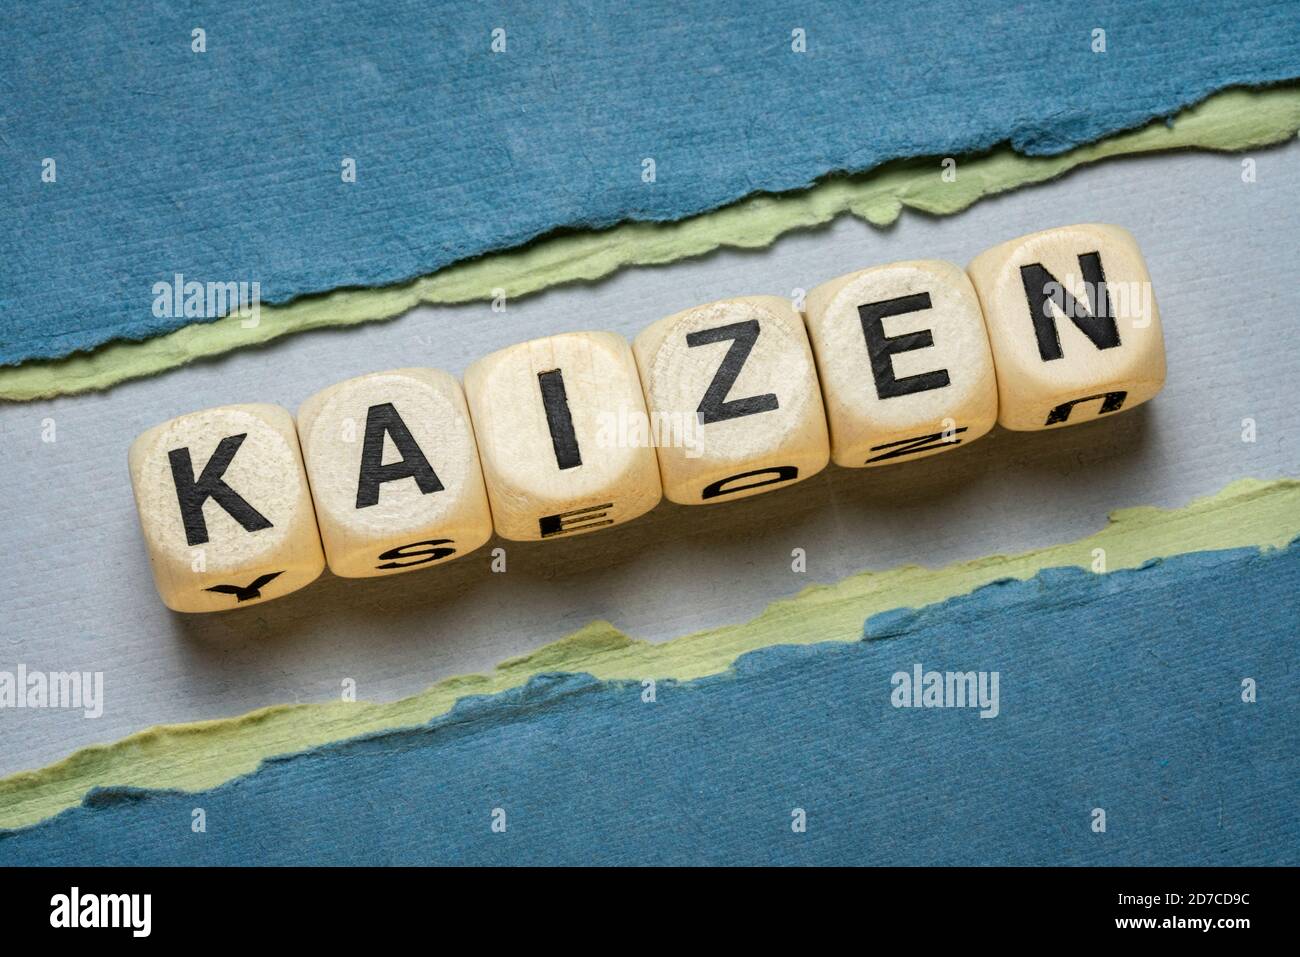 kaizen Wortabstrakt in Holzbuchstabenwürfeln gegen Papier abstrakt in Grüntönen, Japanisch kontinuierliche Verbesserung und eine Änderung für besseres Konzept Stockfoto